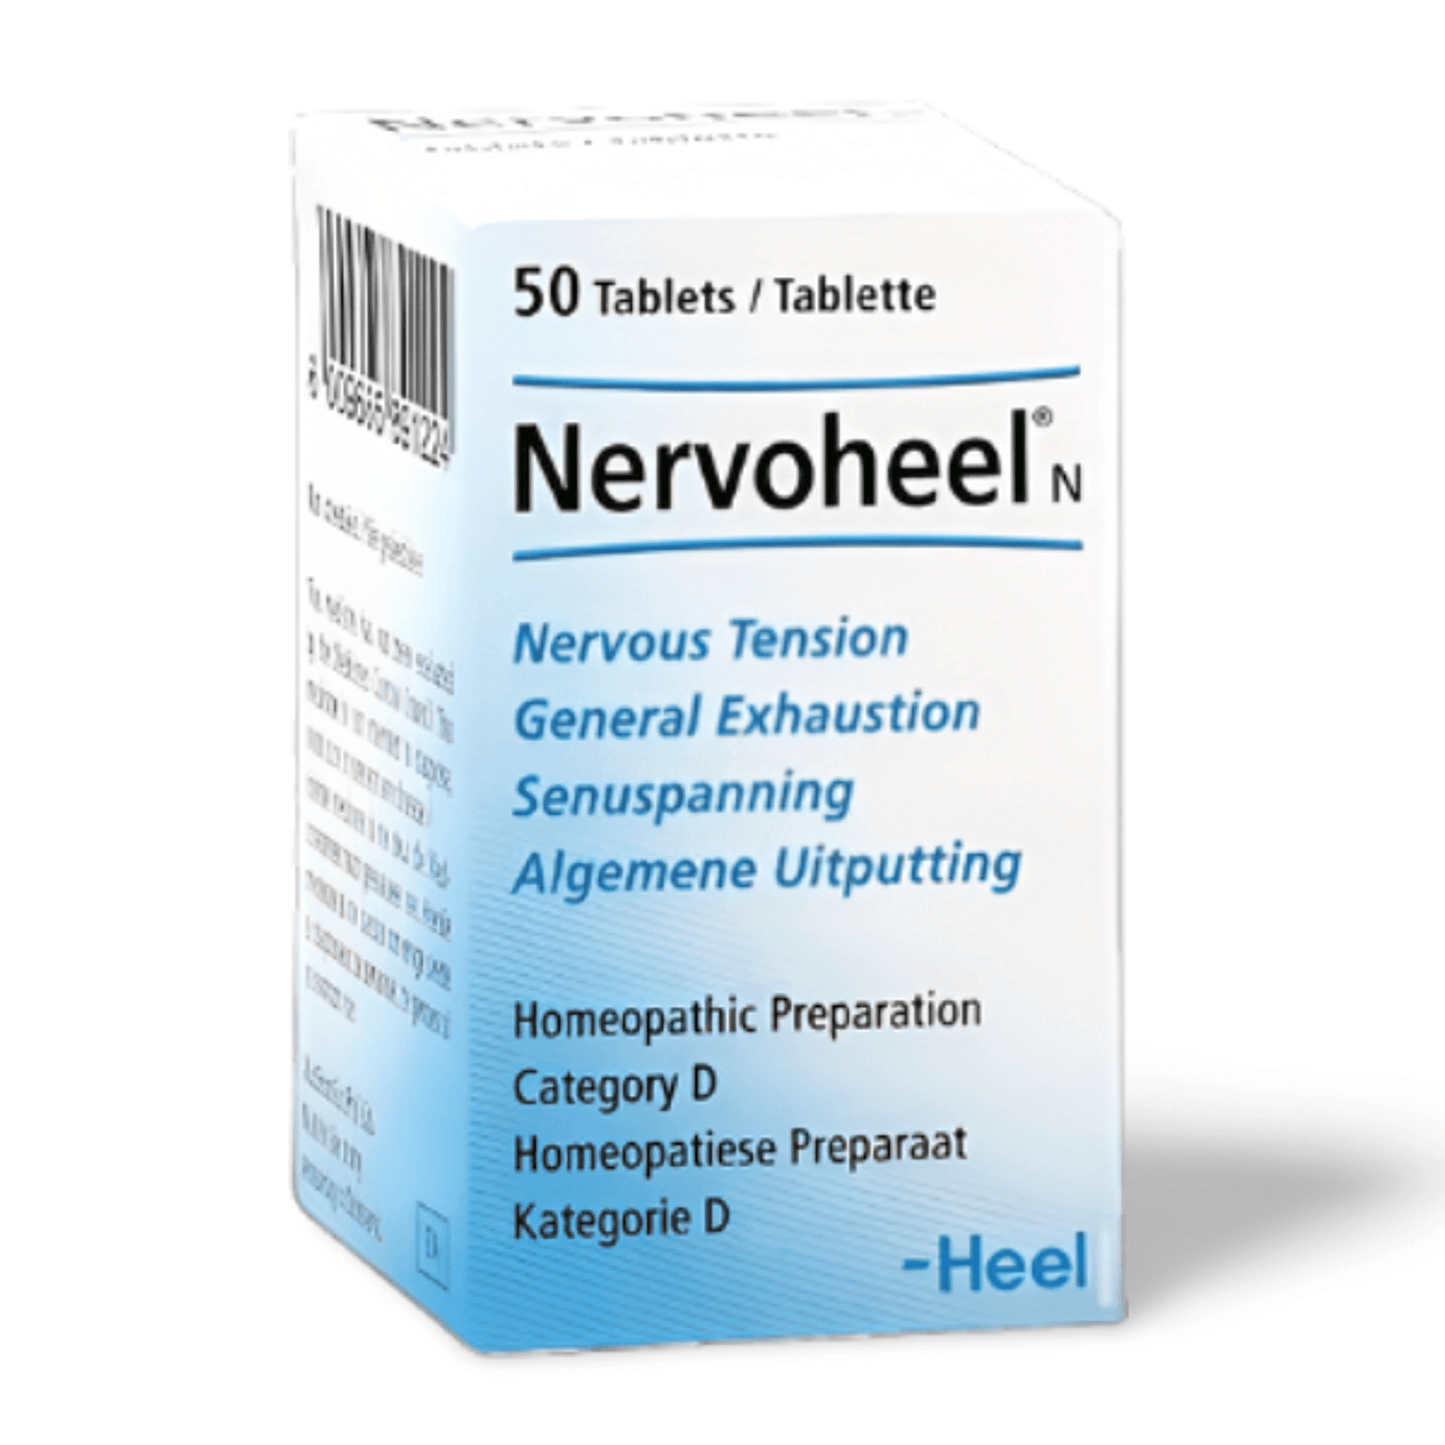 HEEL Nervoheel - THE GOOD STUFF